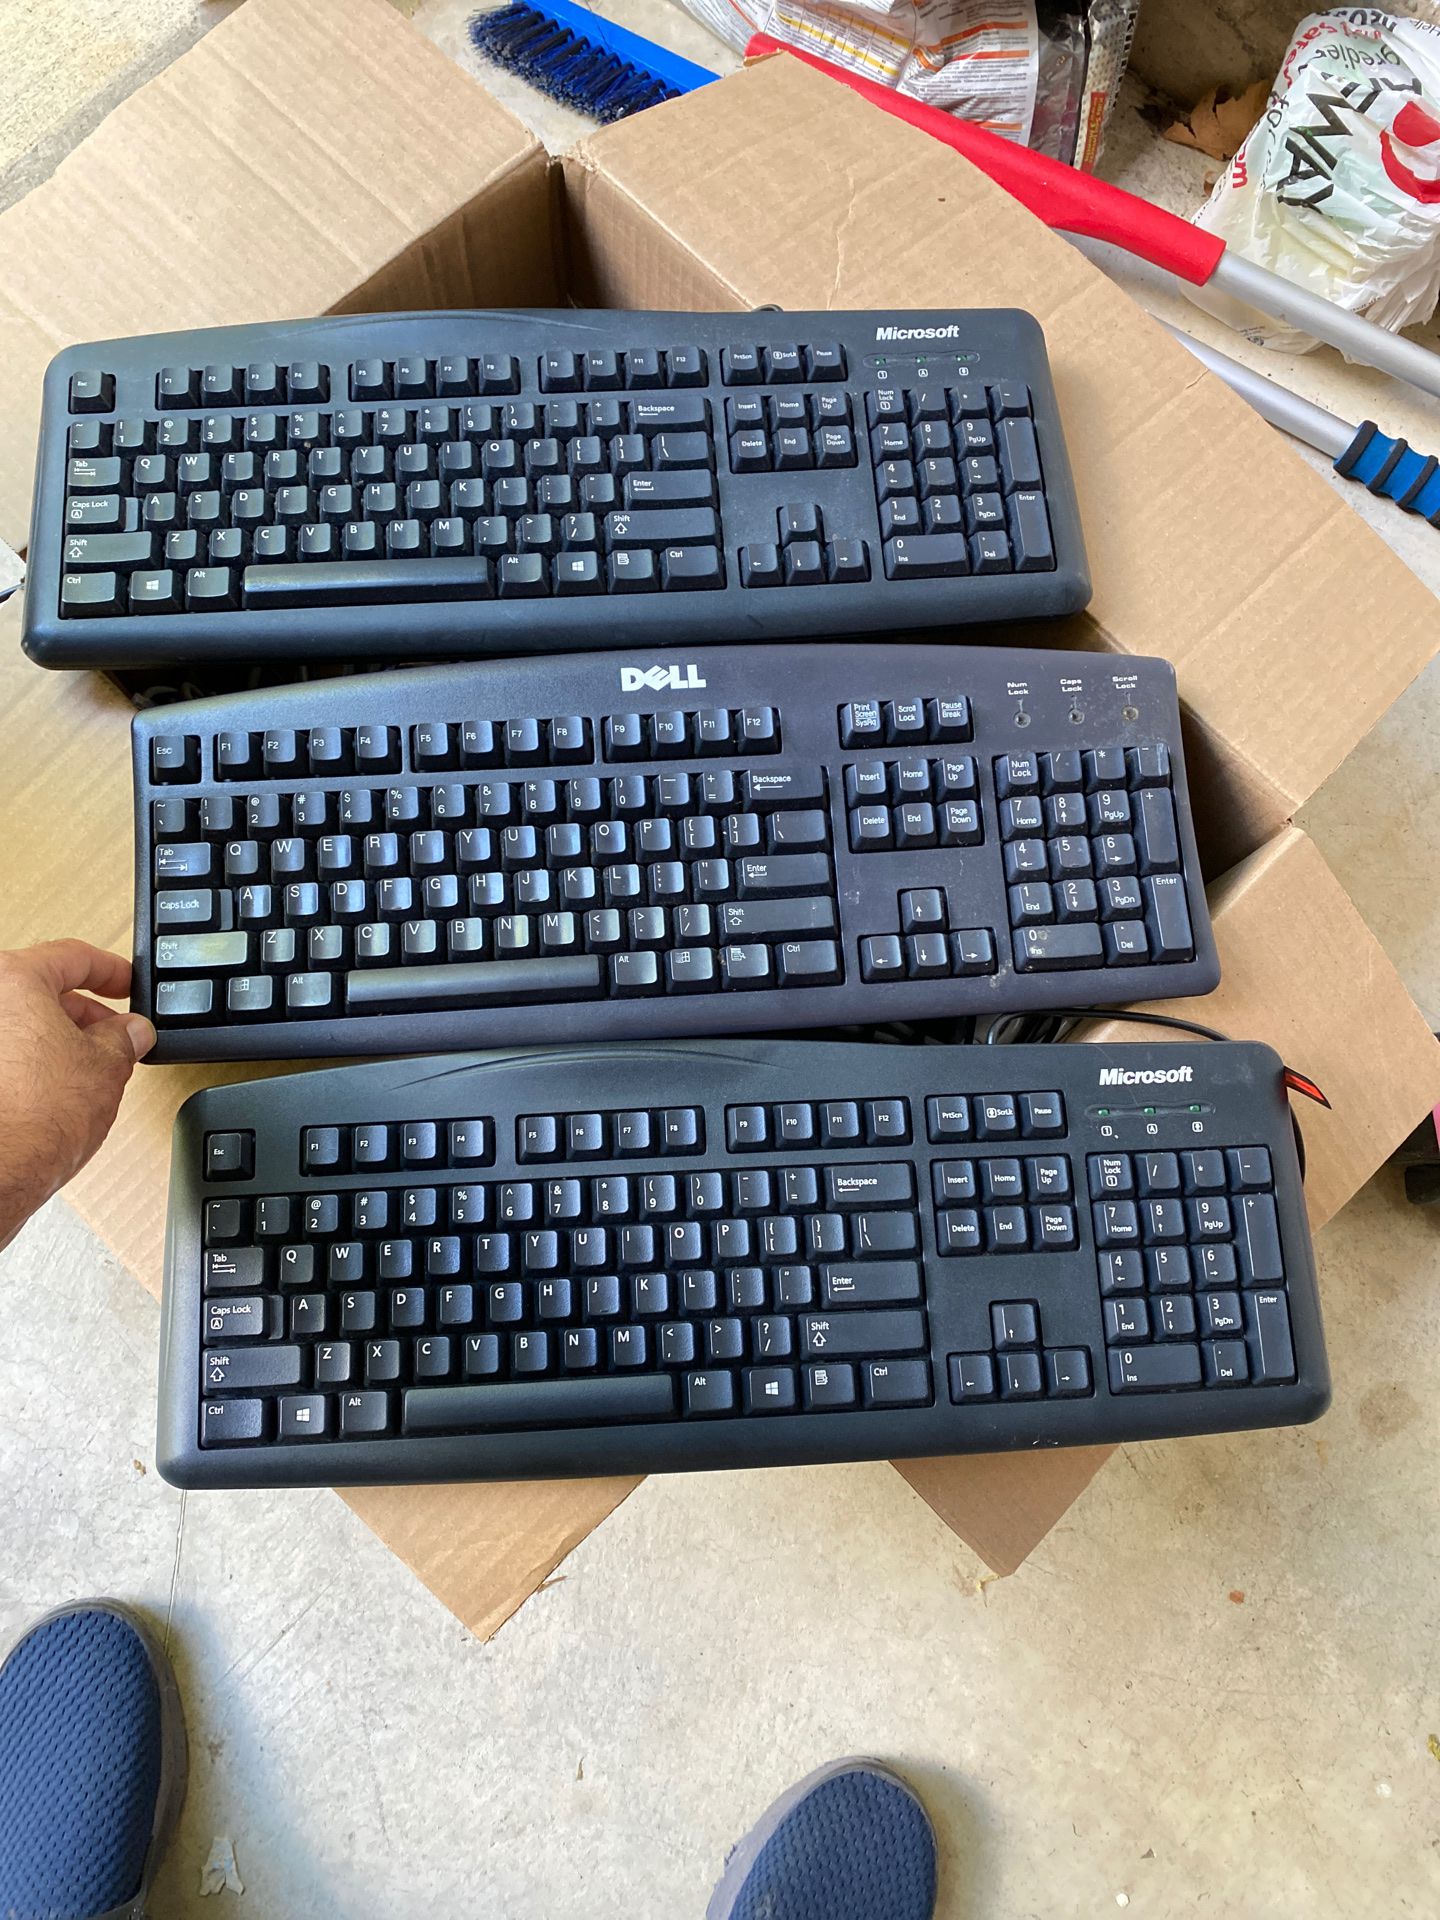 3 keyboards 30 dollars